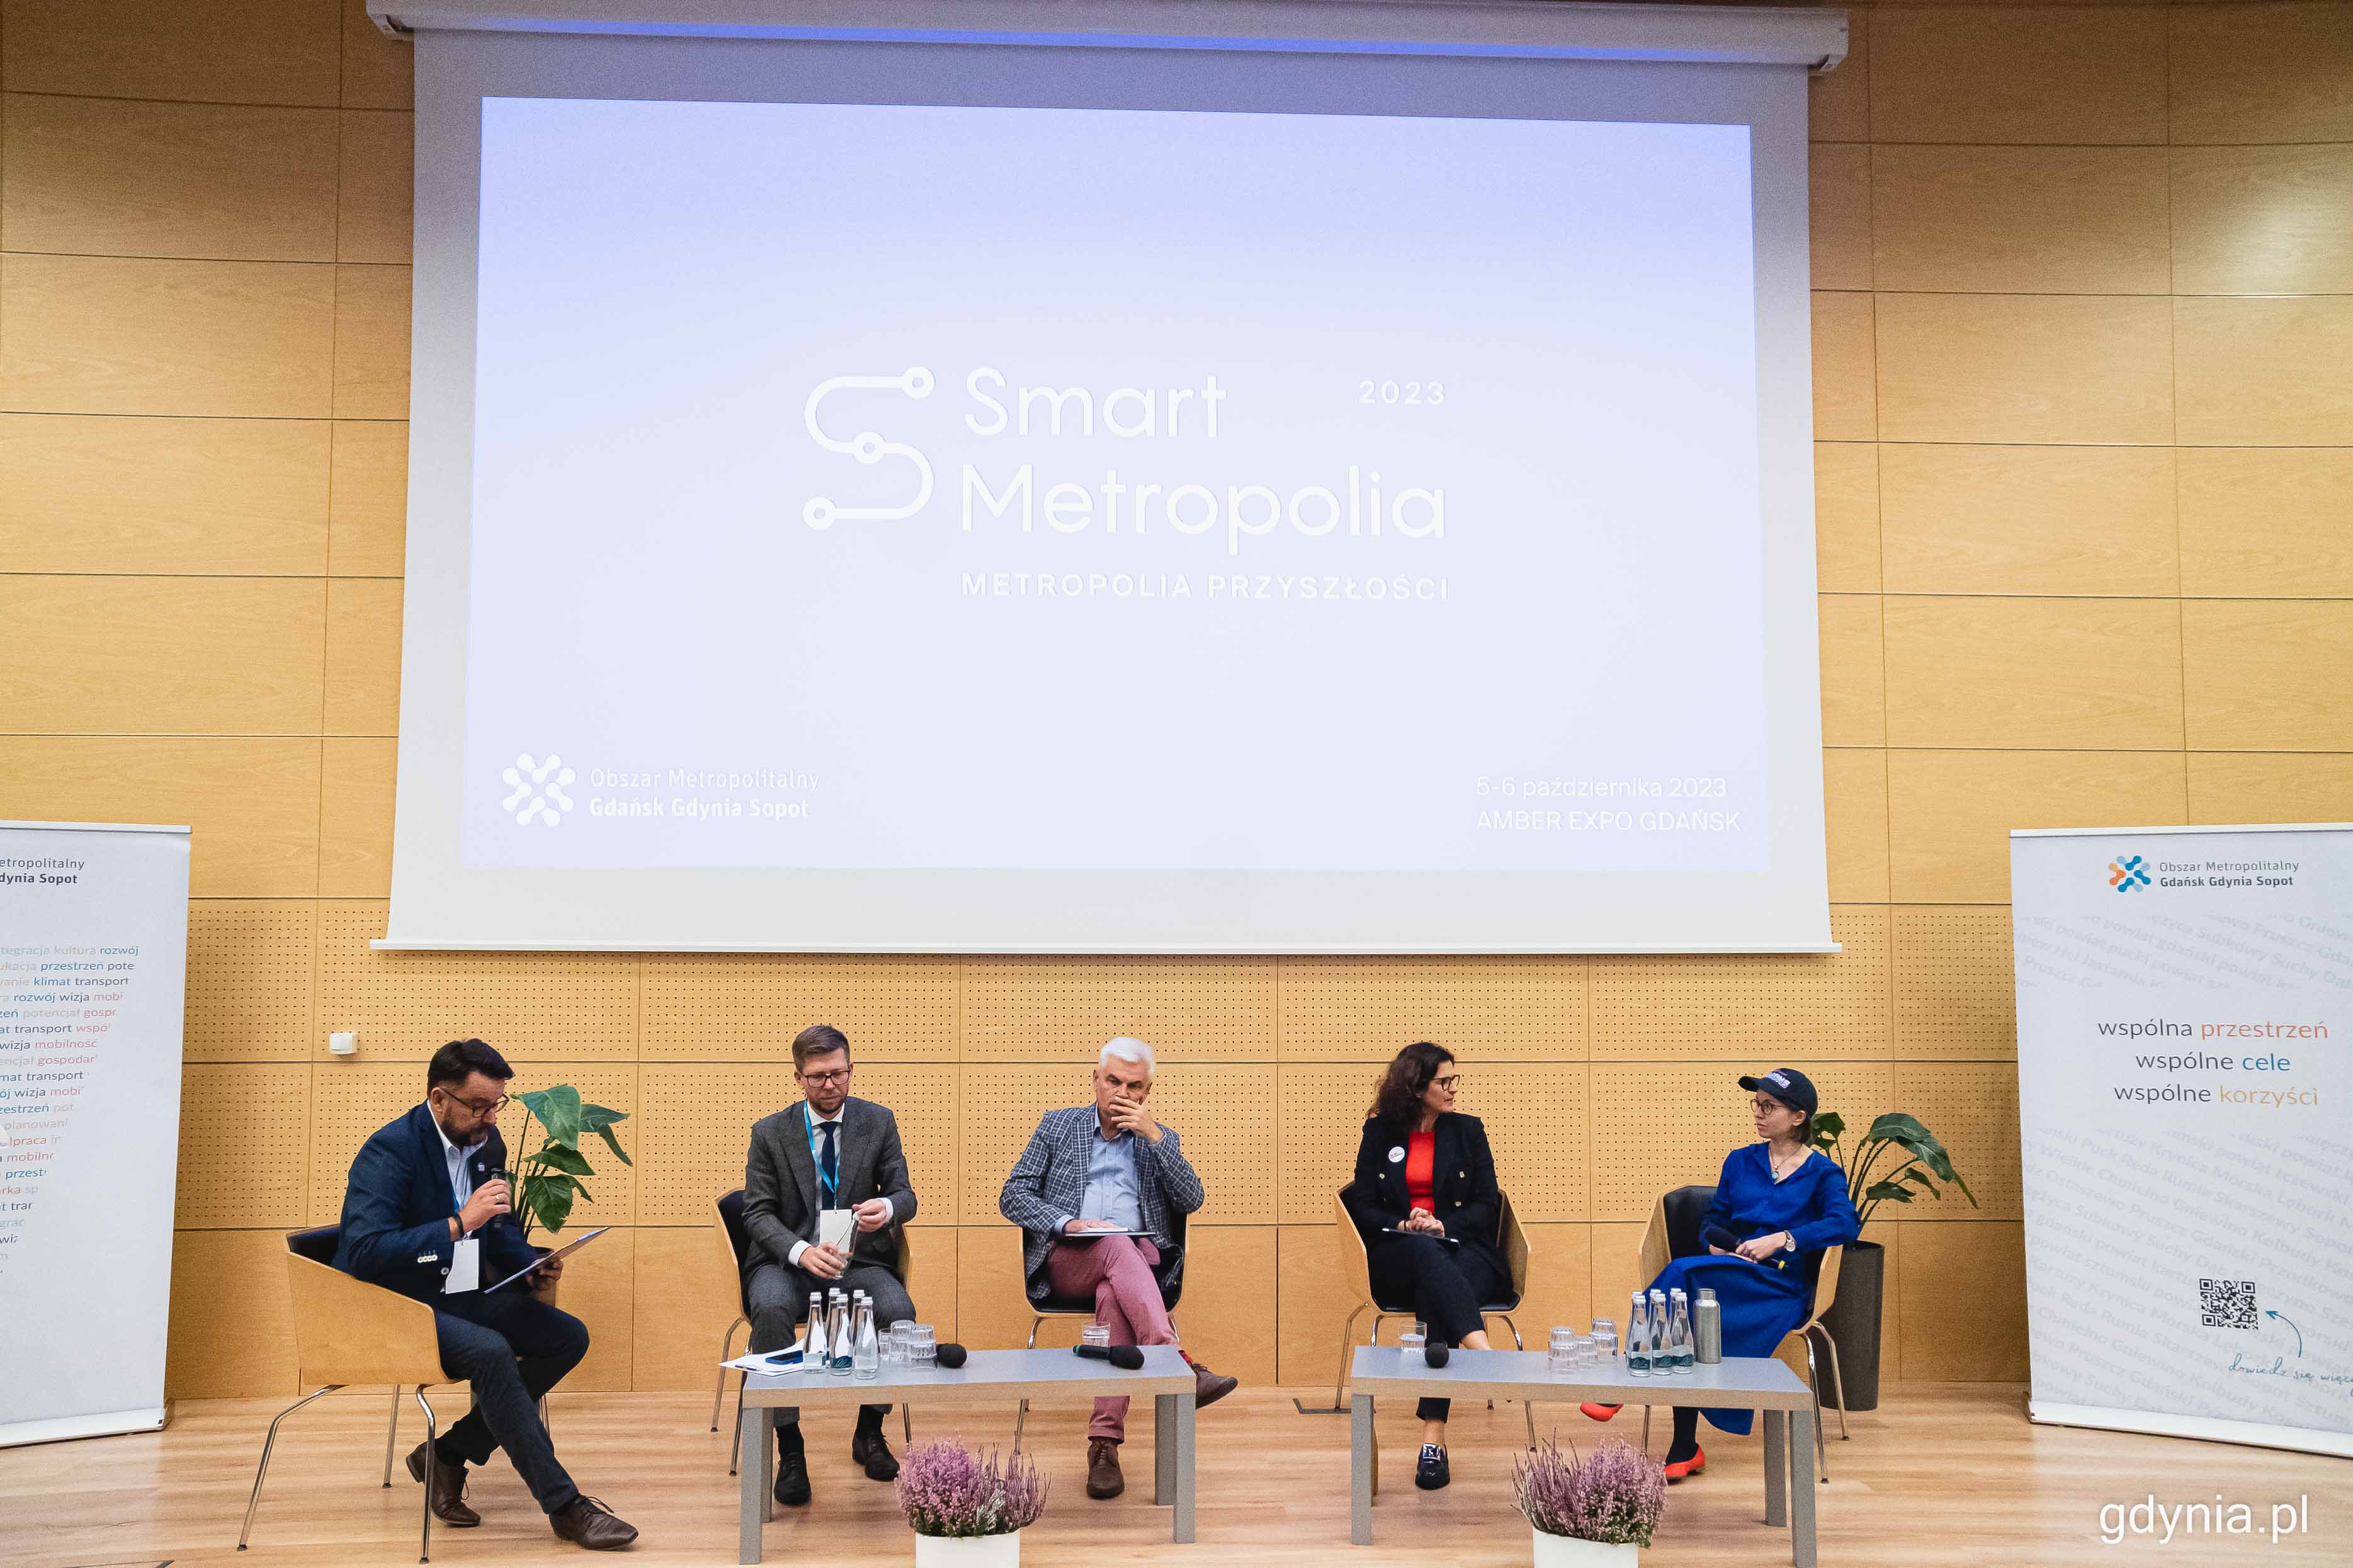 Sala konferencyjna, ekran z napisem Smart Metropolia, pięć osób na scenie, siedzą w fotelach